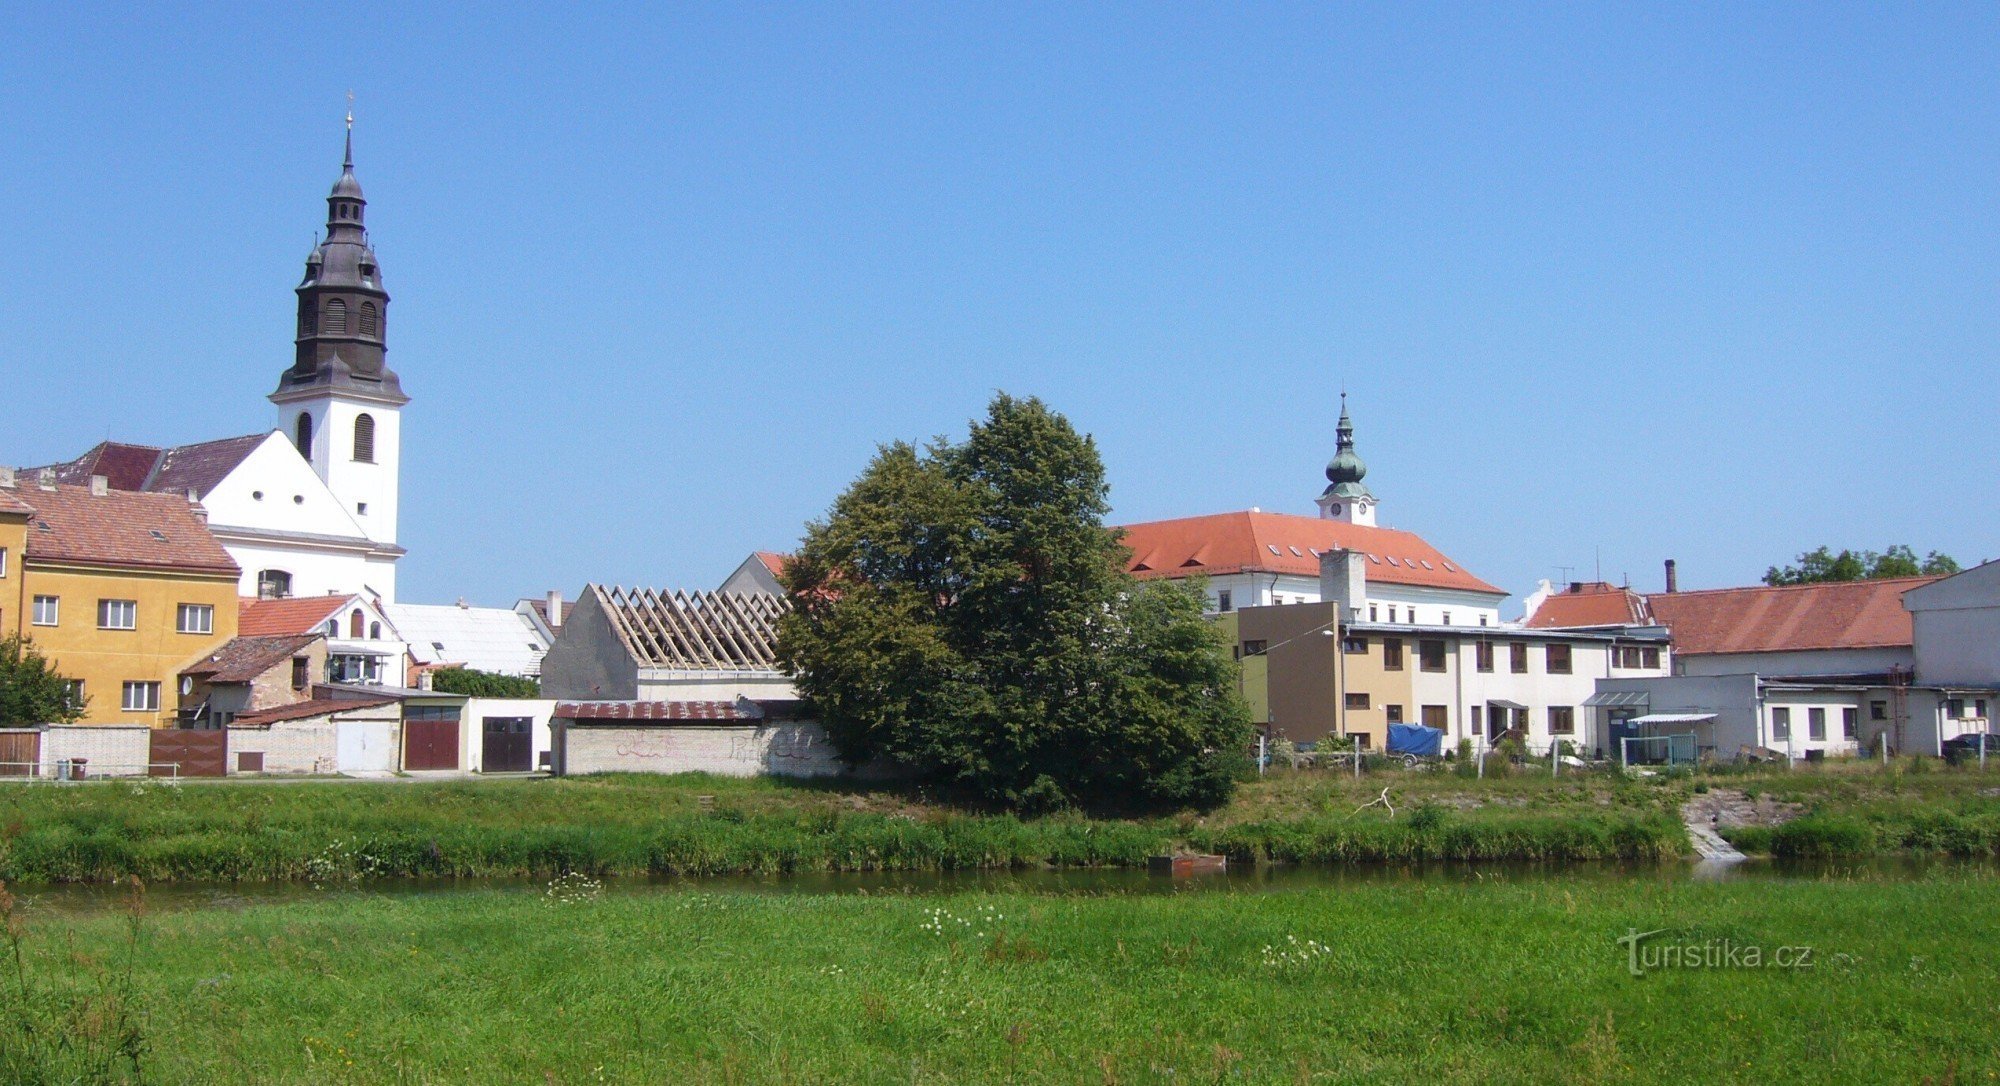 Zamek i kościół. Węgierski cypel